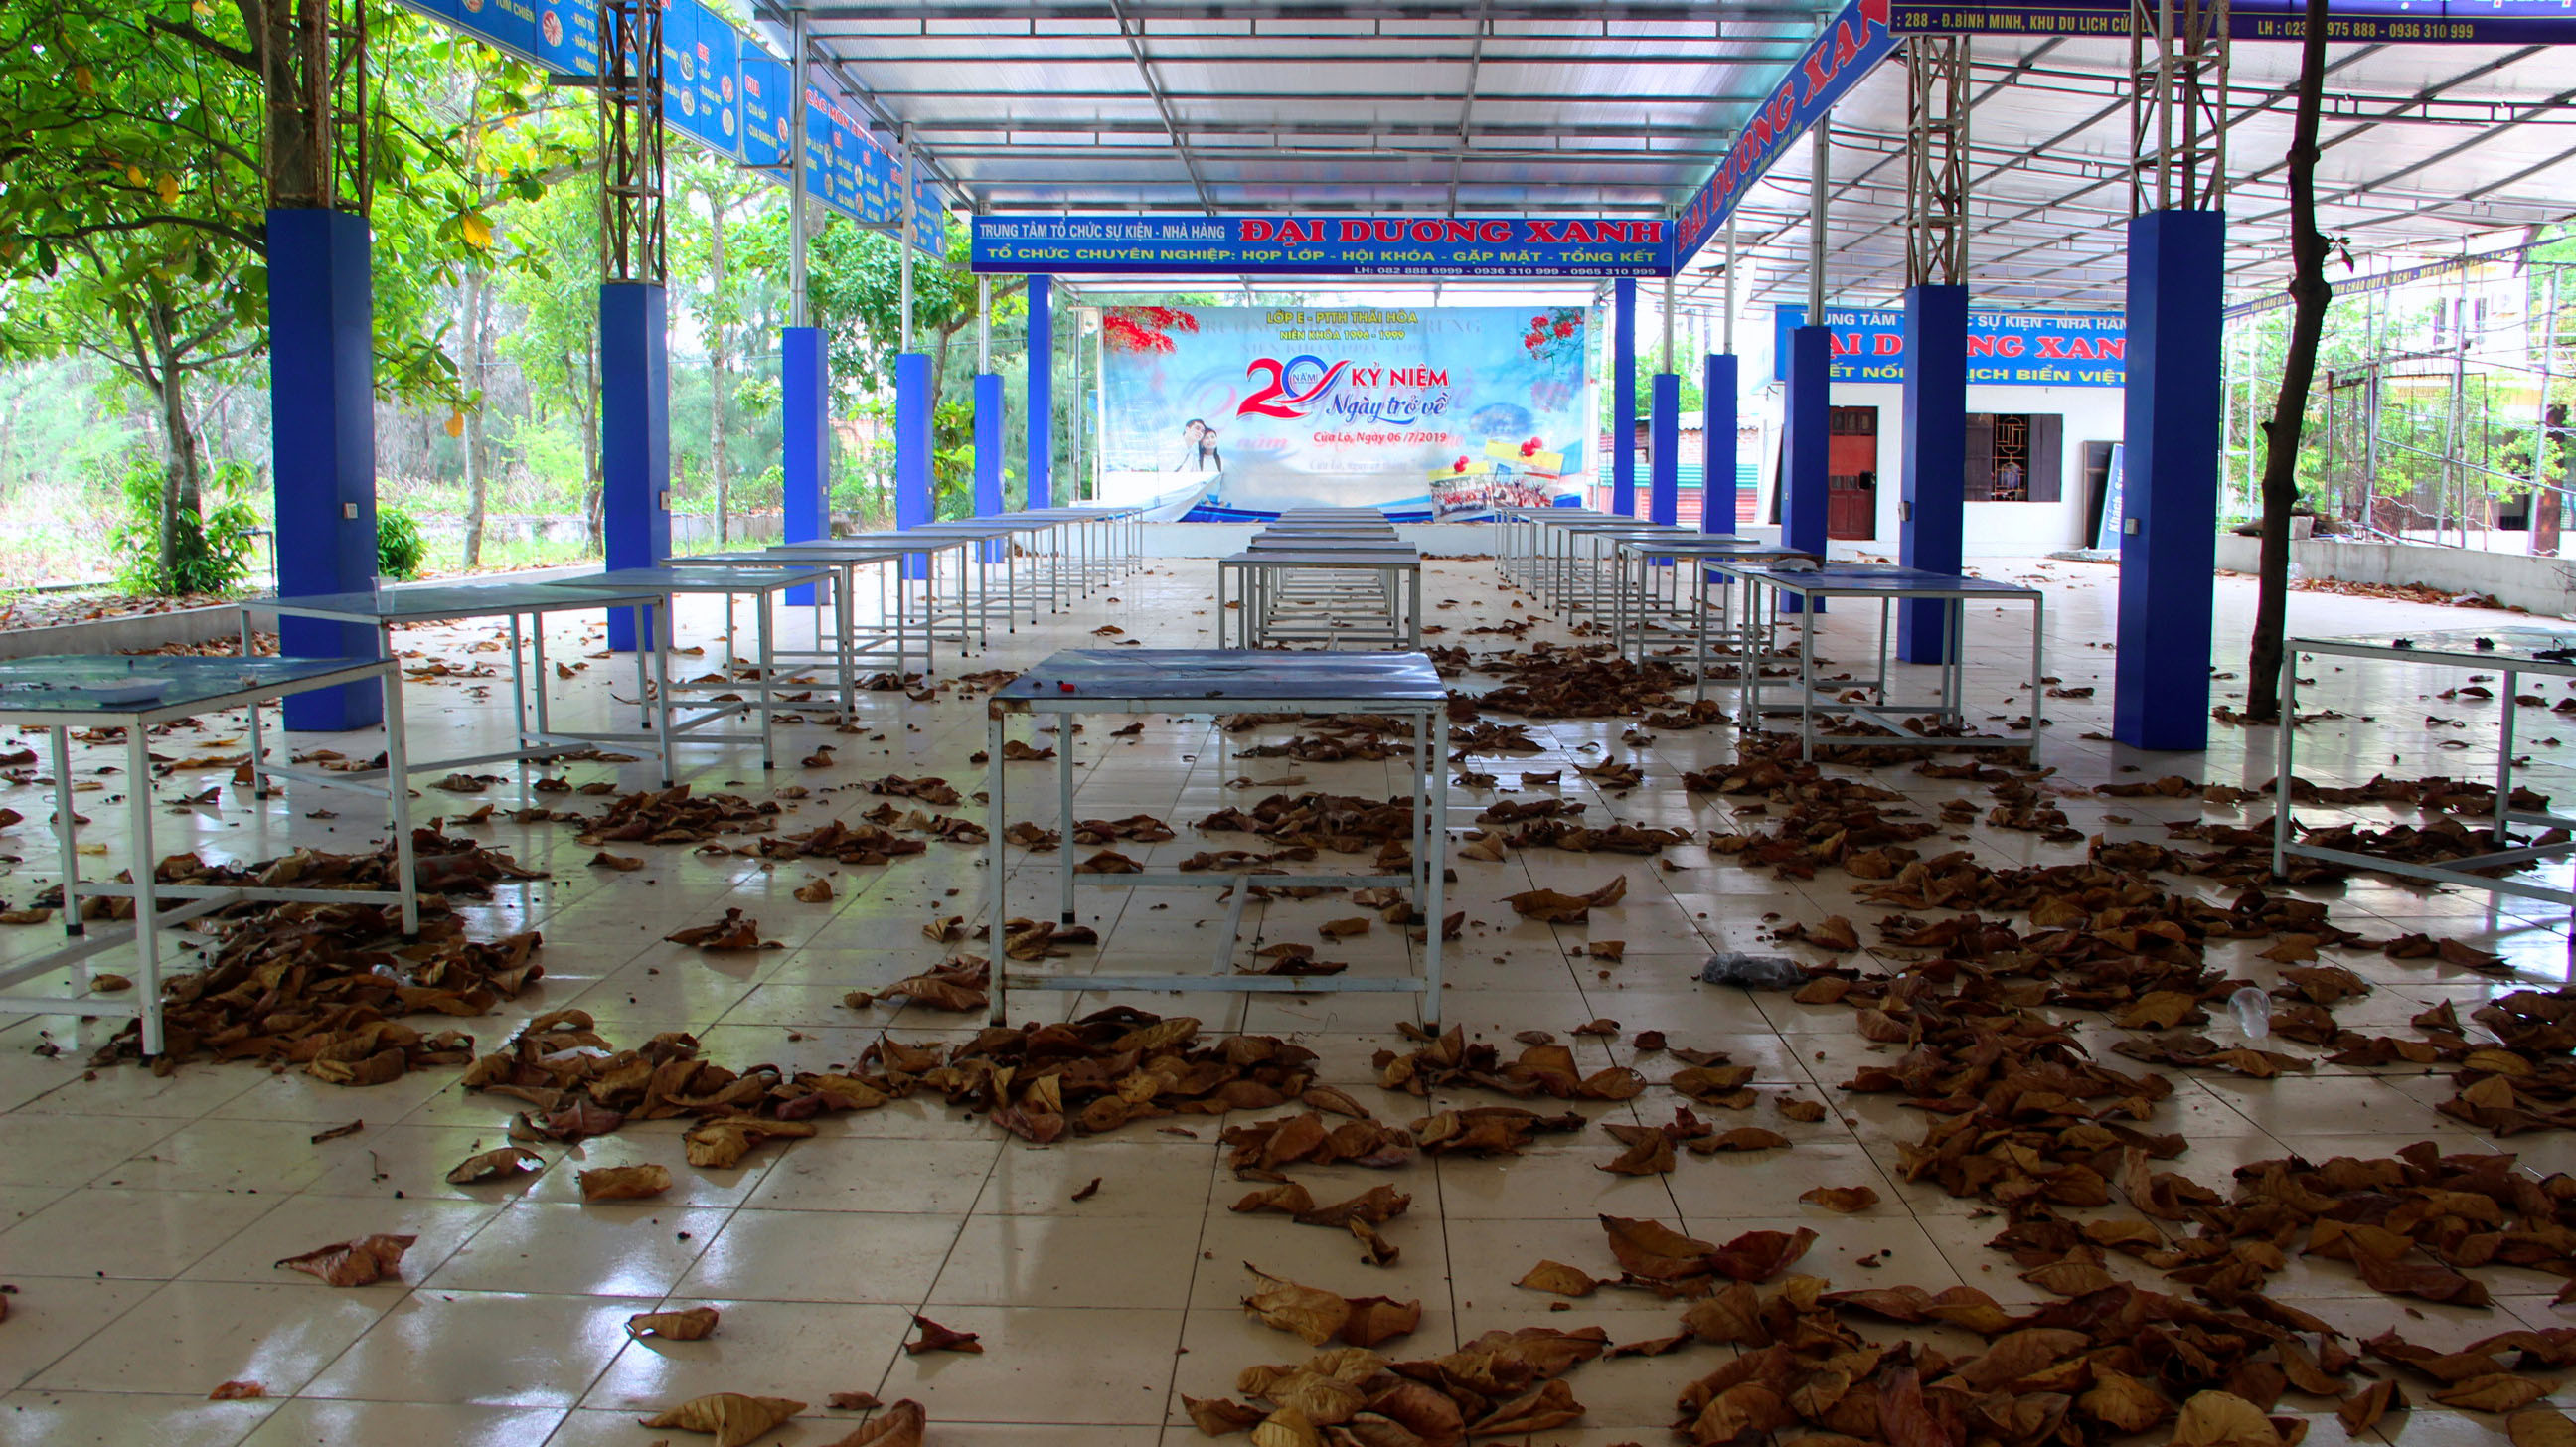 Một số nhà hàng ven biển Cửa Lò lâu ngày tạm dừng hoạt ddoongj, không có ai dọn dẹp, lá cây rụng đầy sân. Ảnh: Quang An